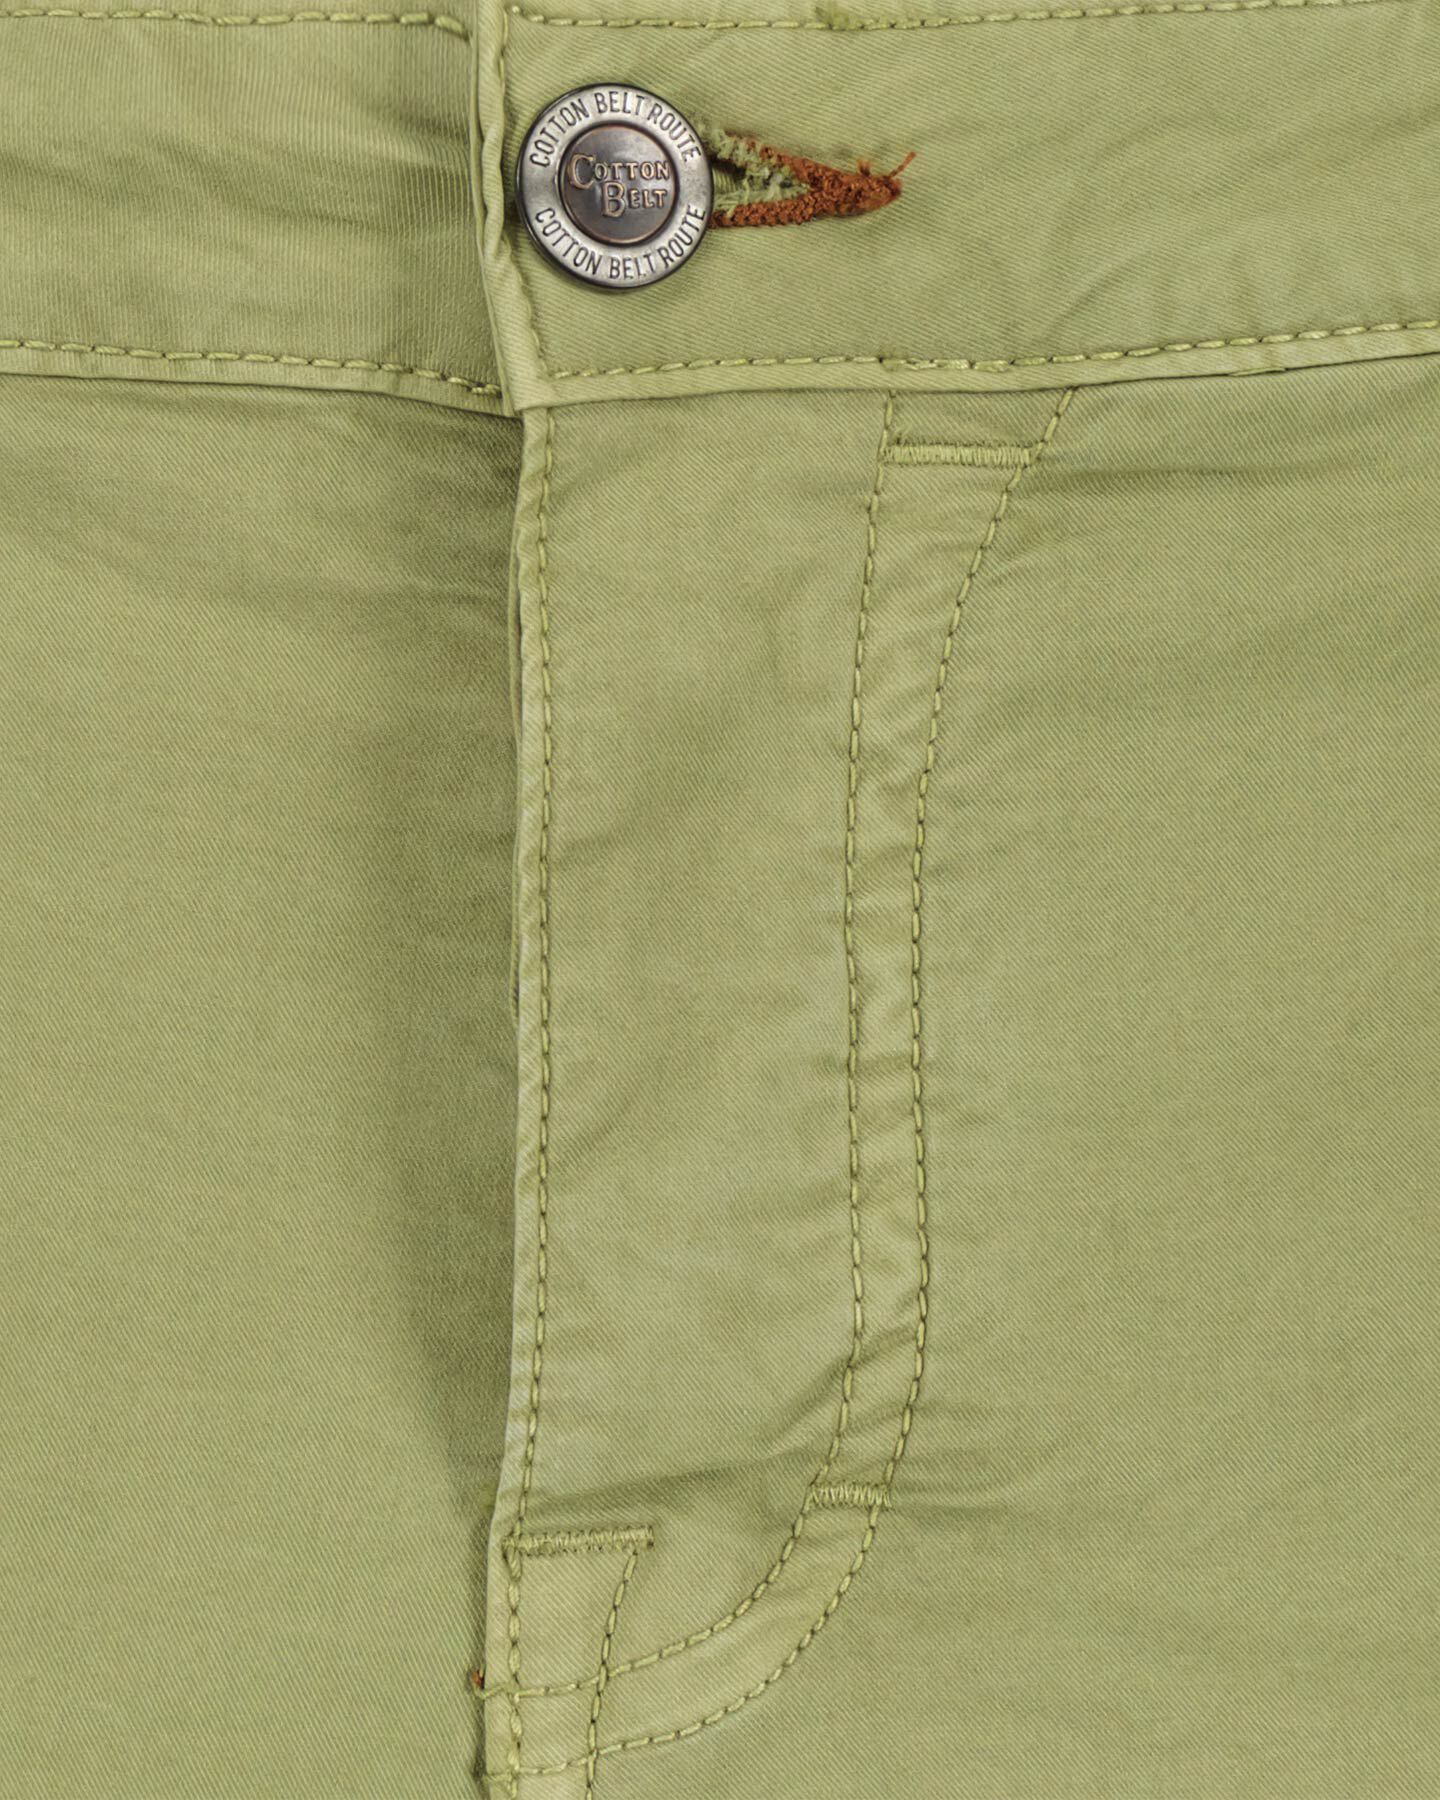  Pantalone COTTON BELT CHINO M S4115866|751|30 scatto 3